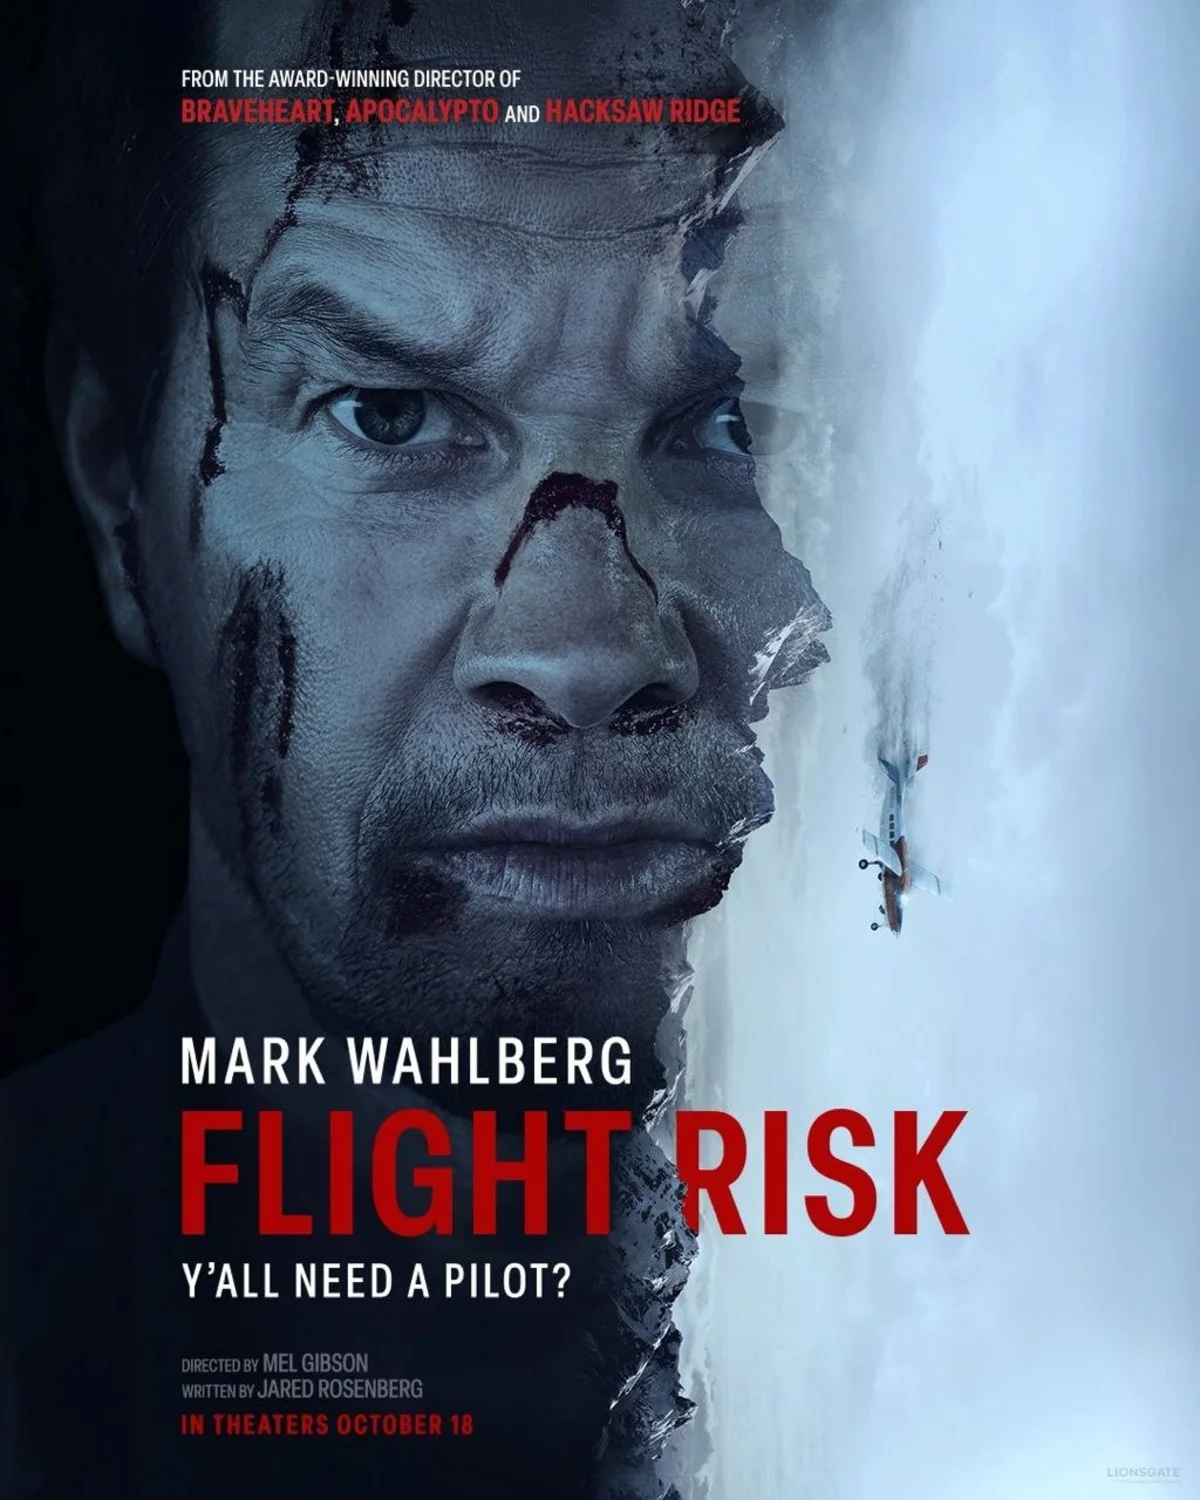 Lionsgate показала трейлер боевика «Особо опасный пассажир» с Марком Уолбергом - фото 1